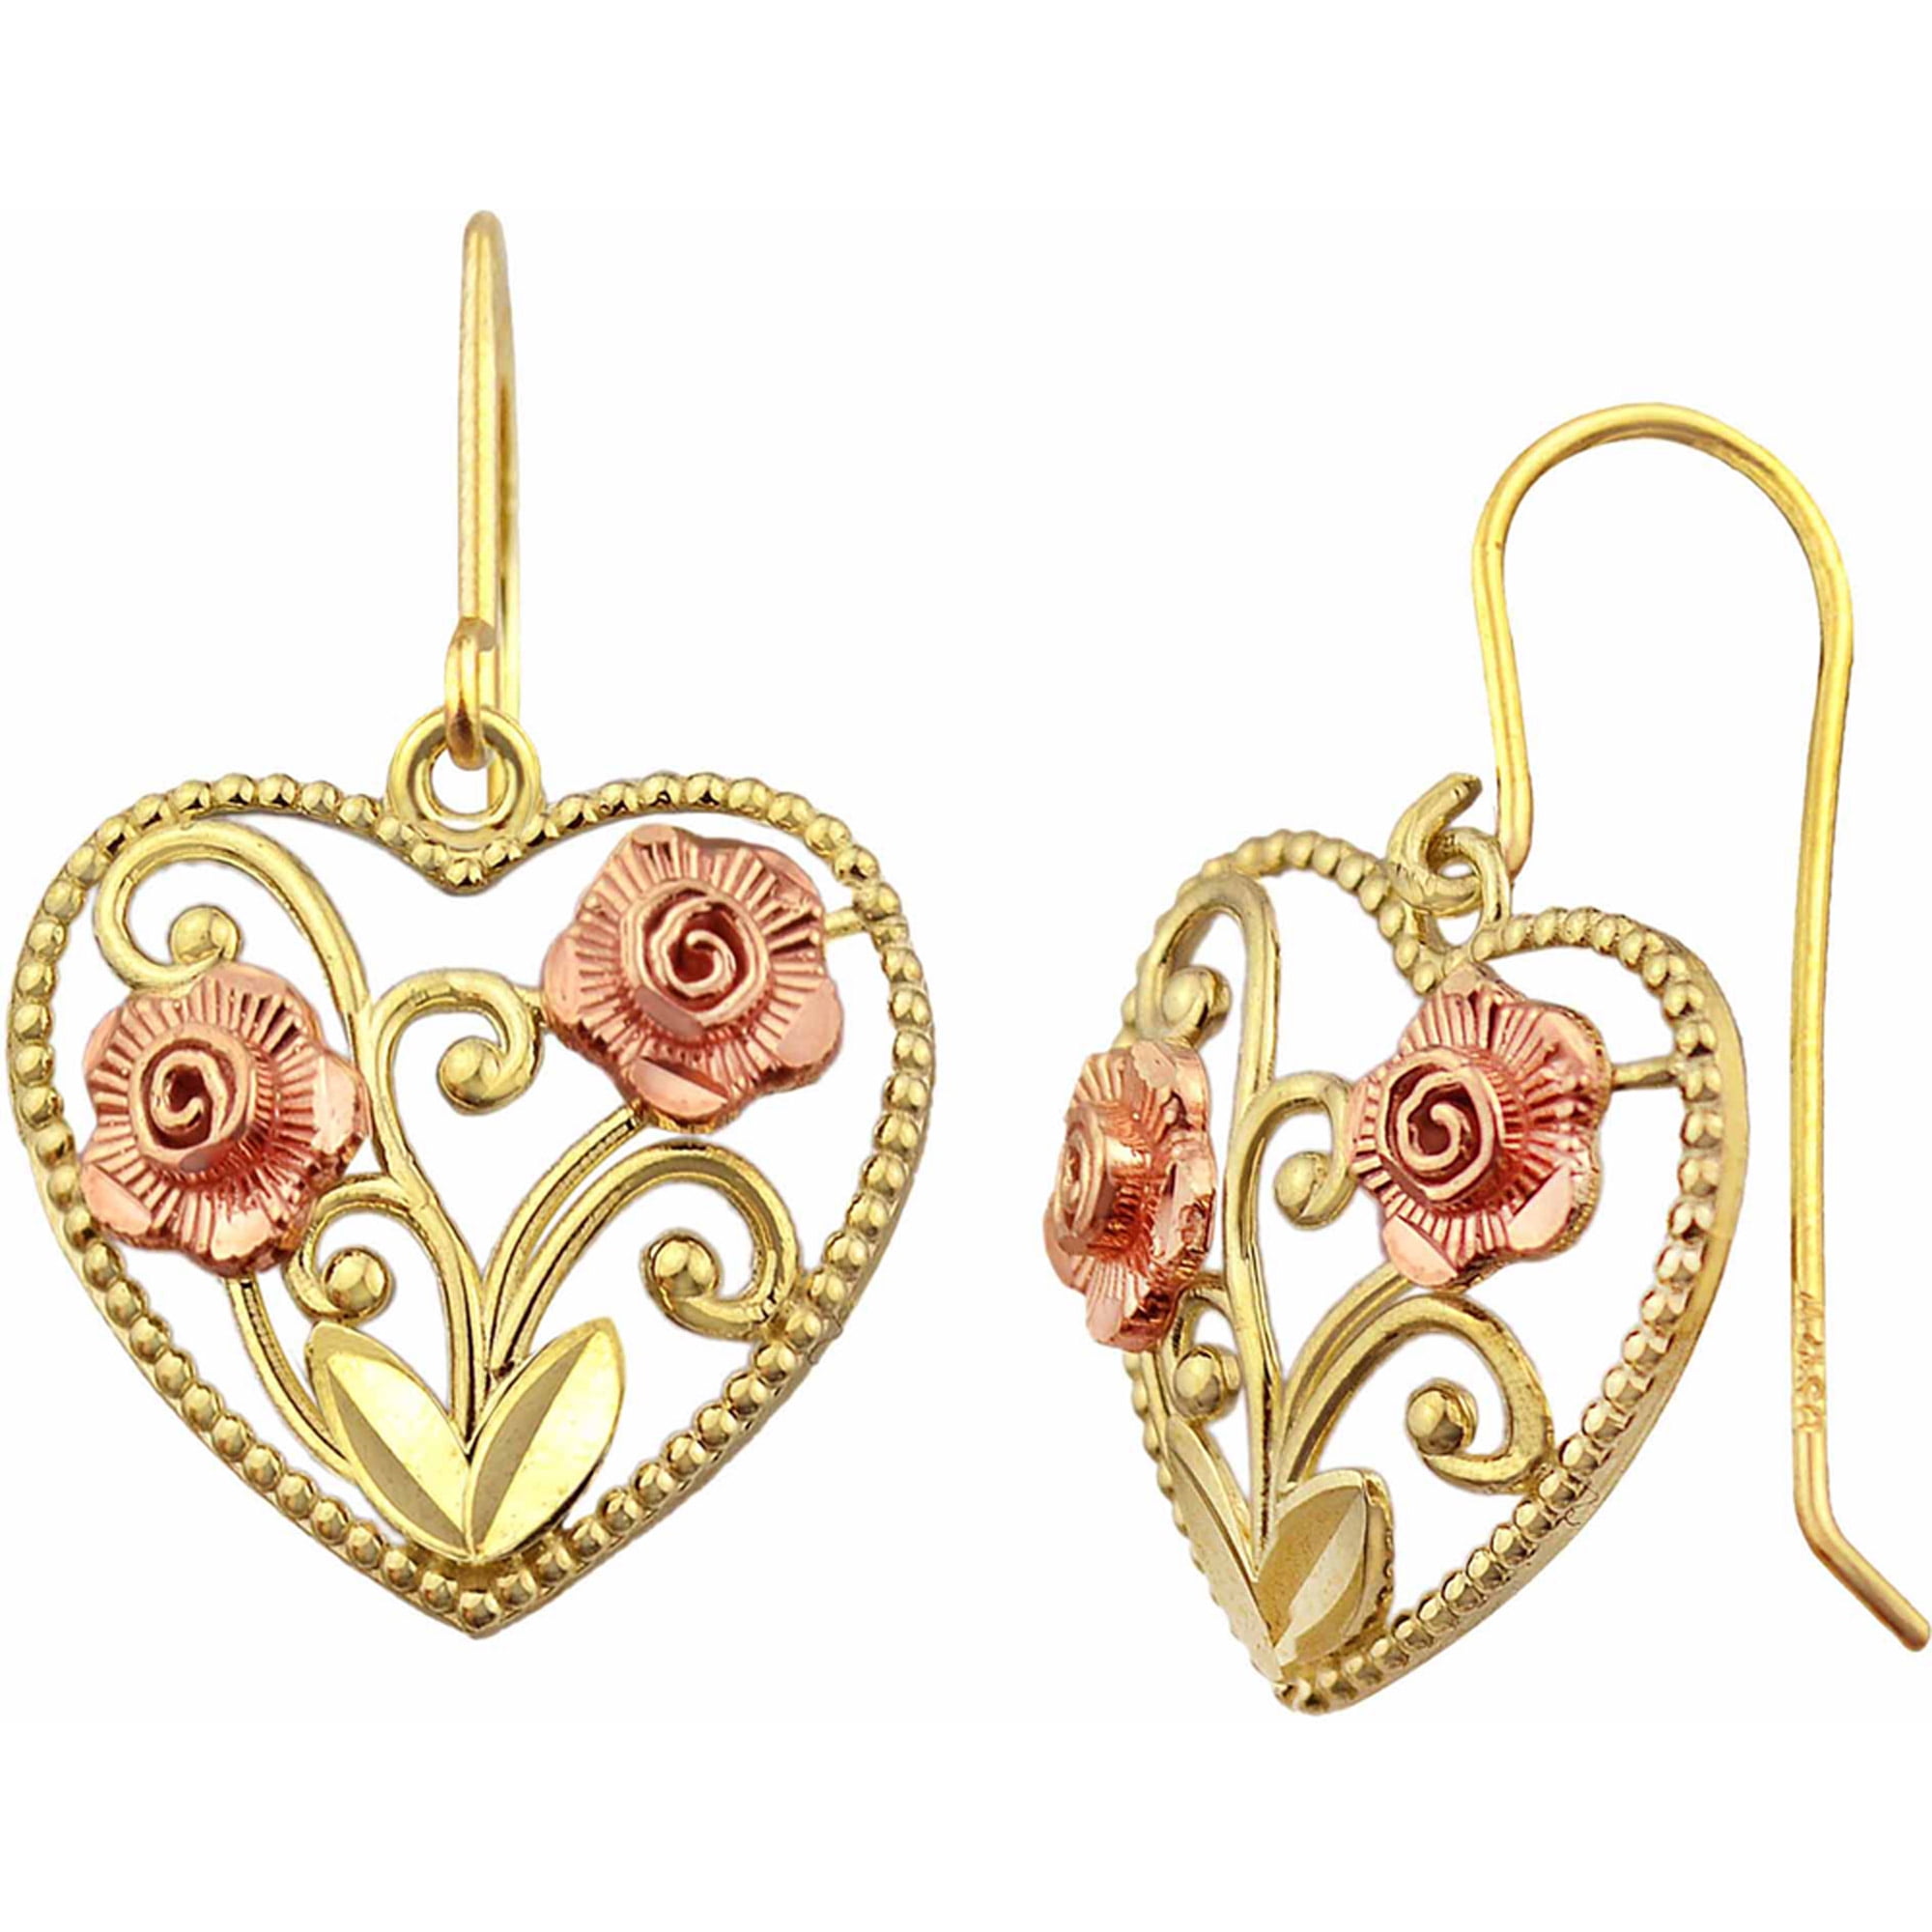 Gold Plated Filigree Handmade Flower Dangle Earrings - Yellow Rose